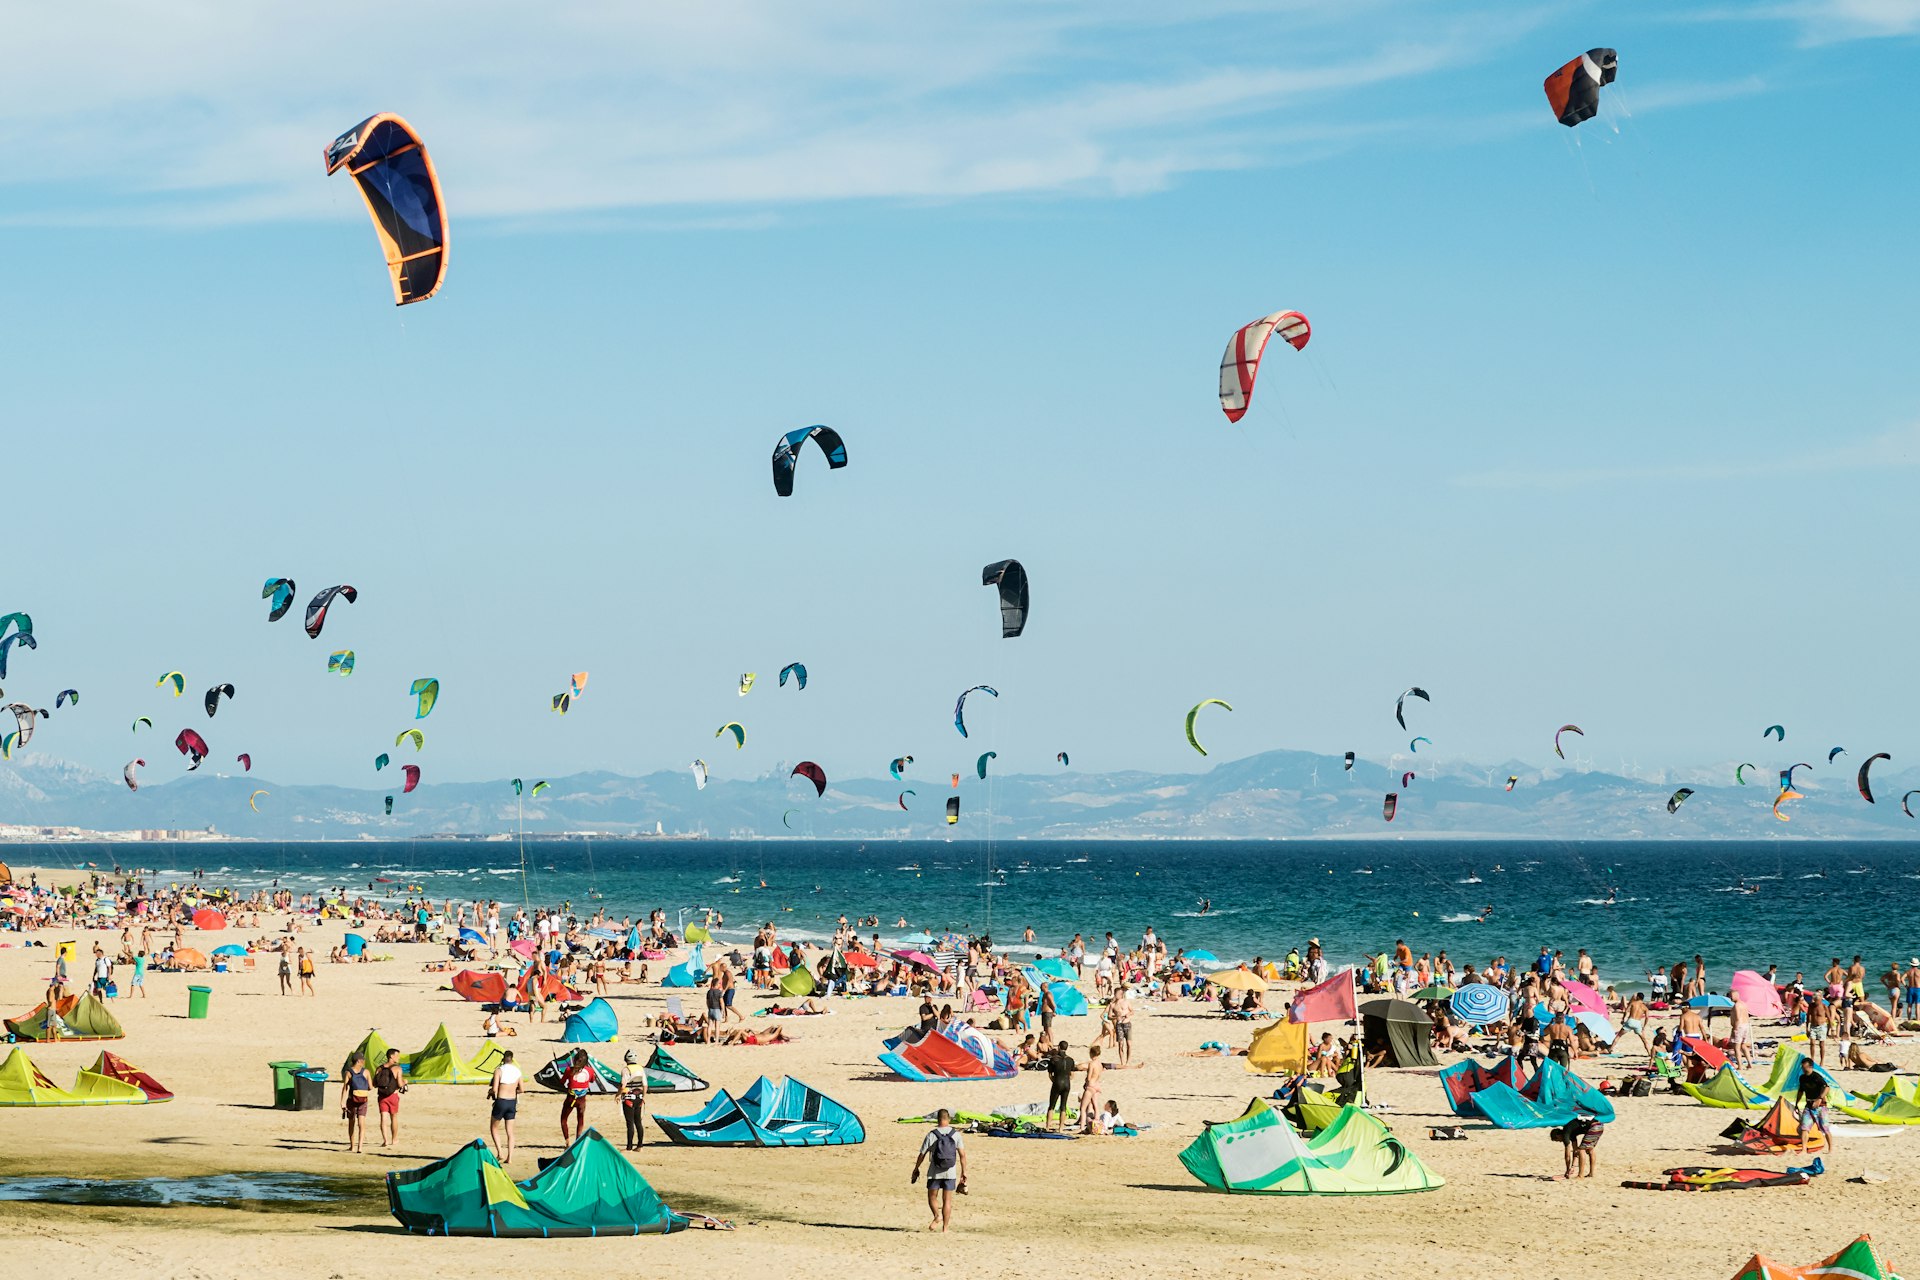 Kitesurfing on the beach of Tarifa